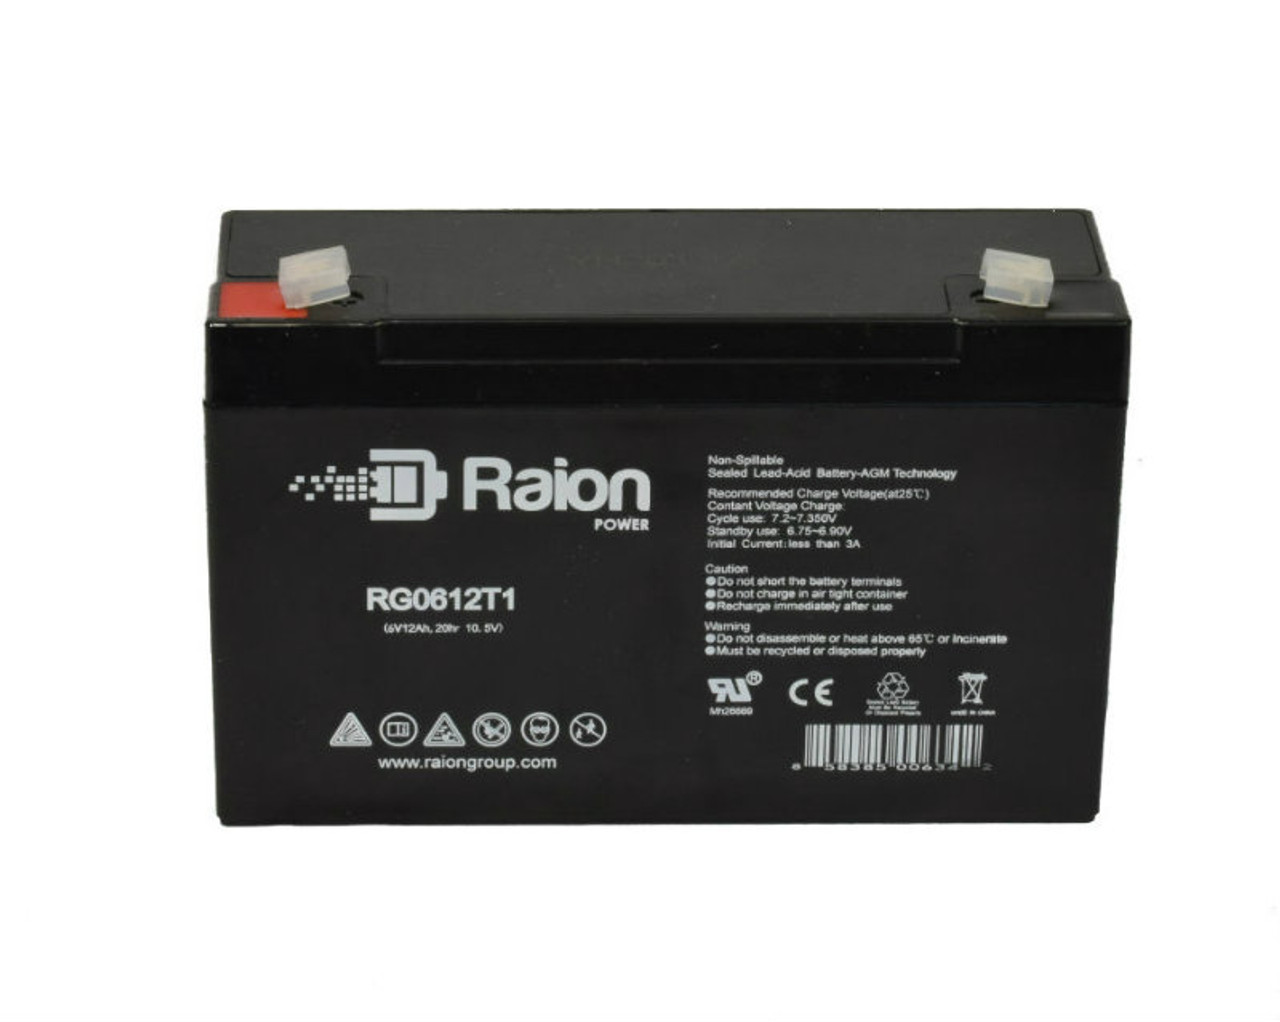 Raion Power RG06120T1 SLA Battery for Lightalarms 2RPG3